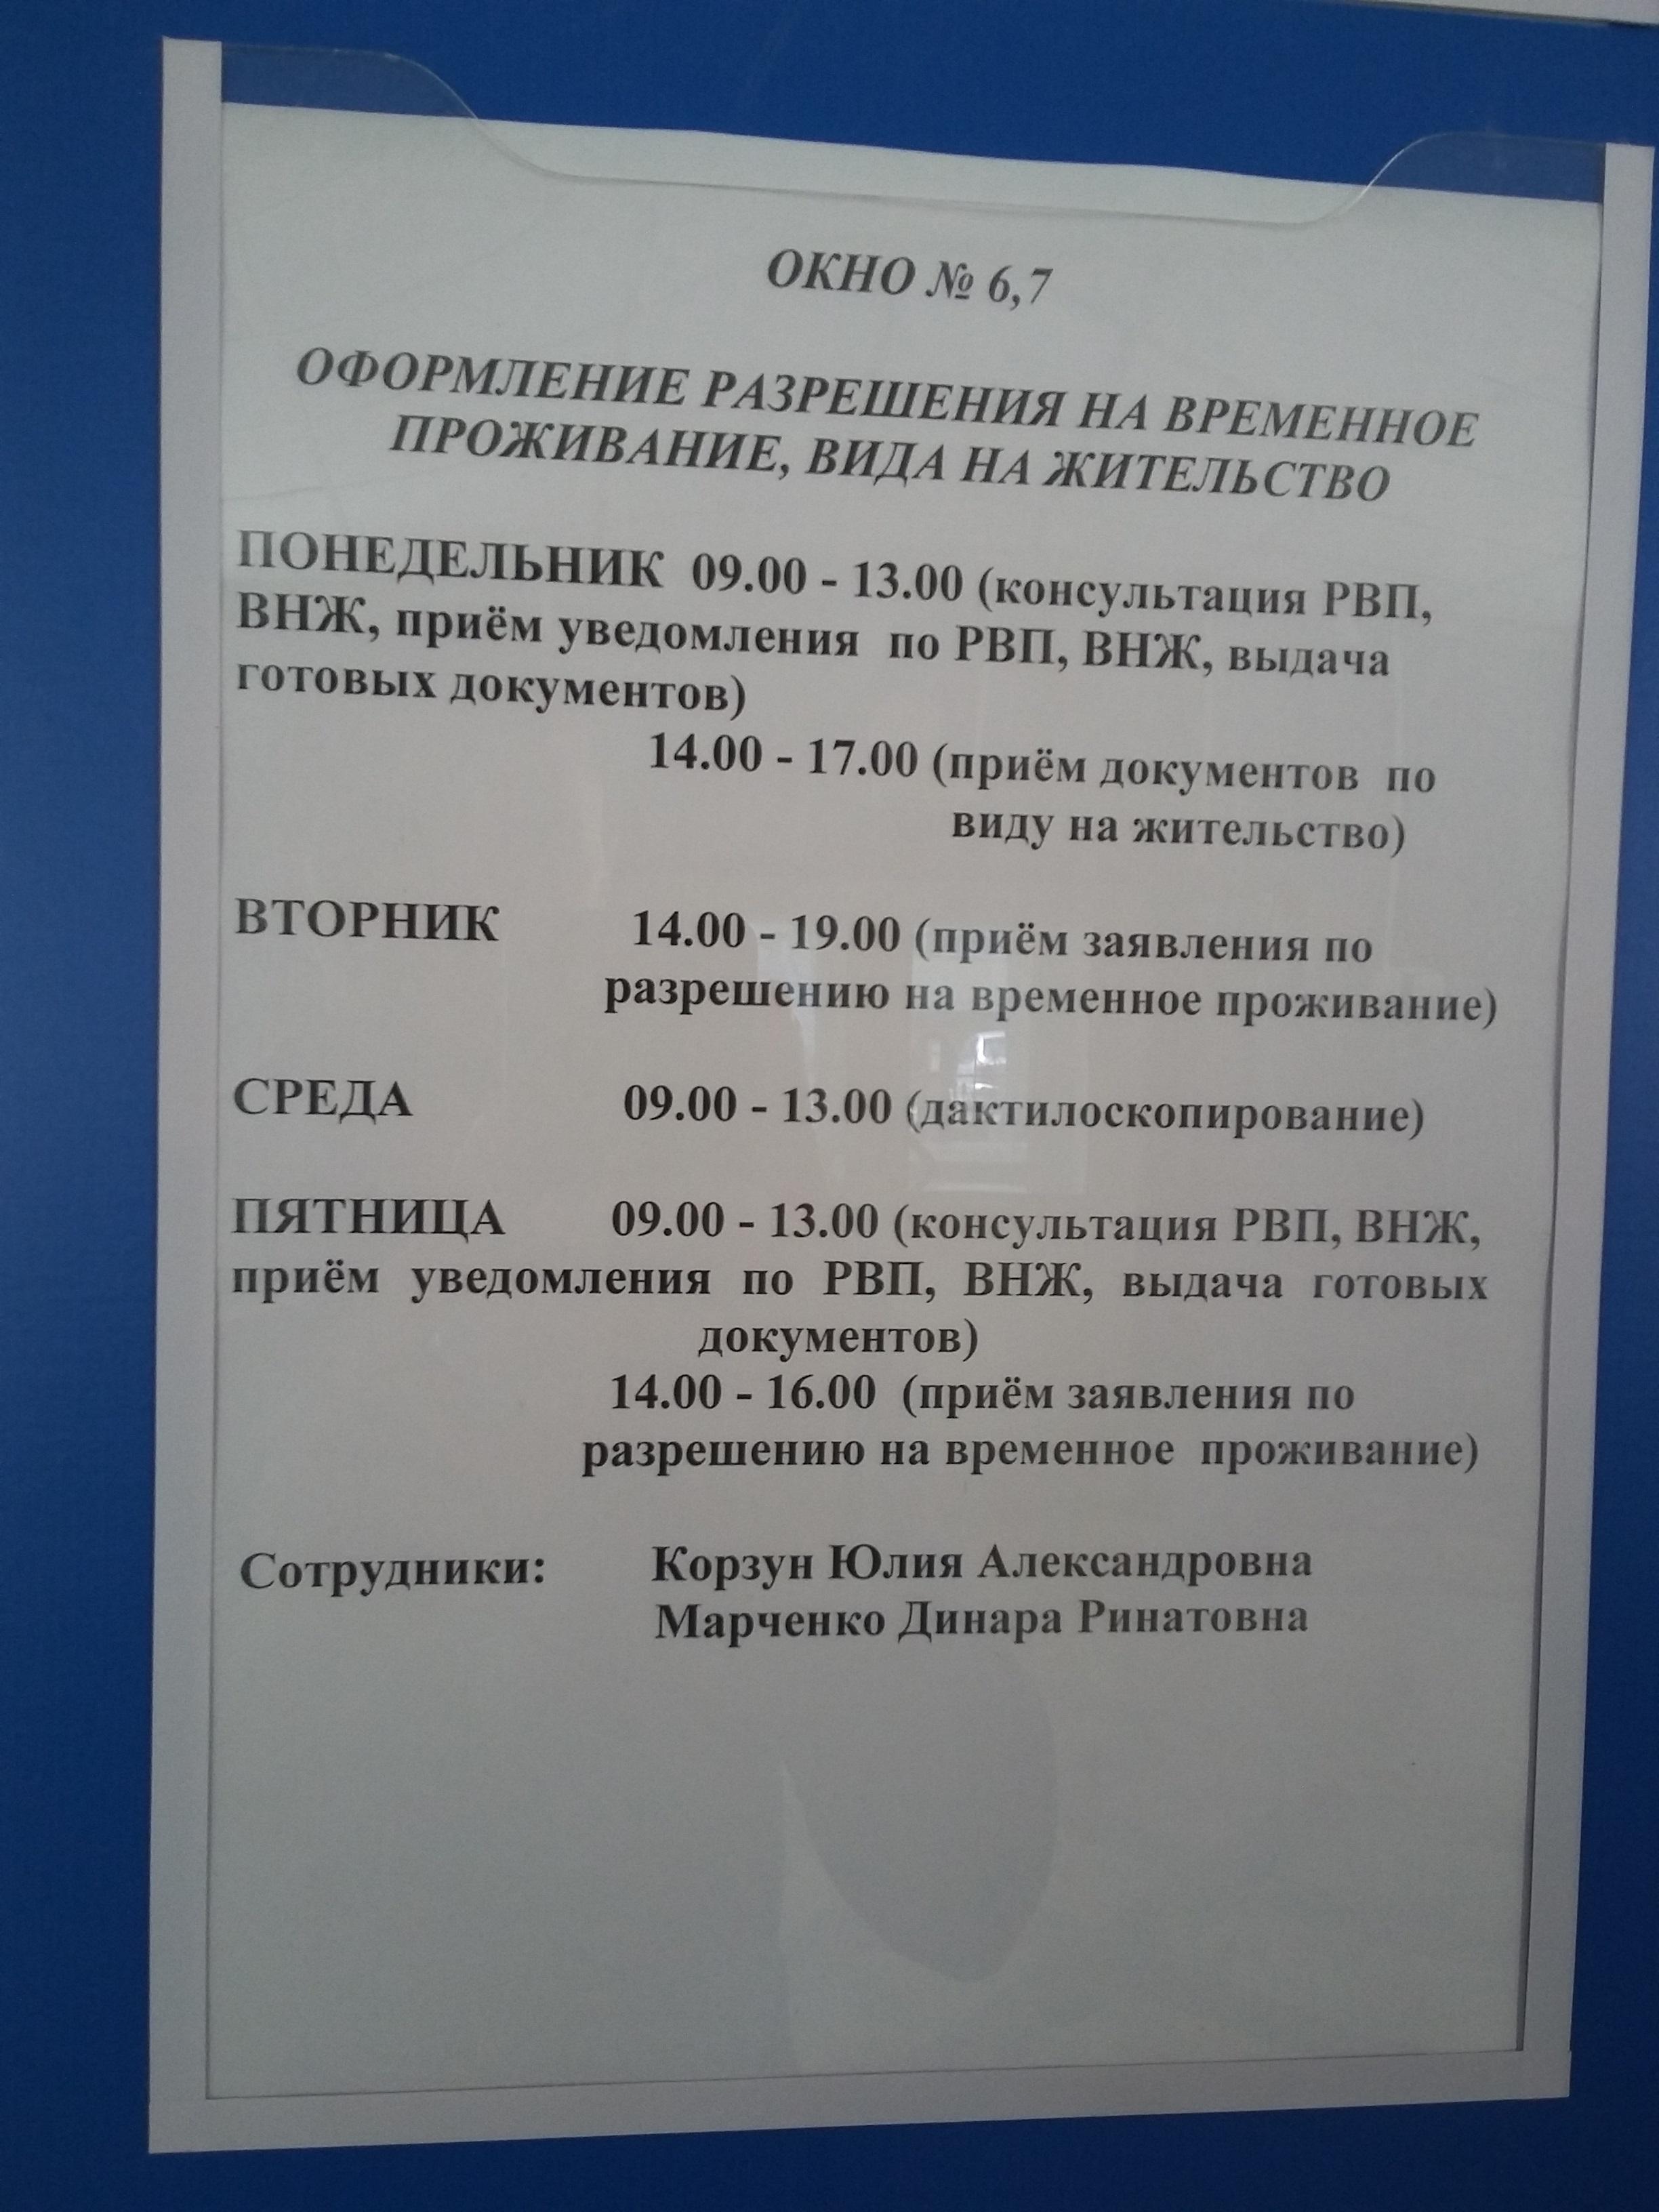 паспорт стол кировского района расписание